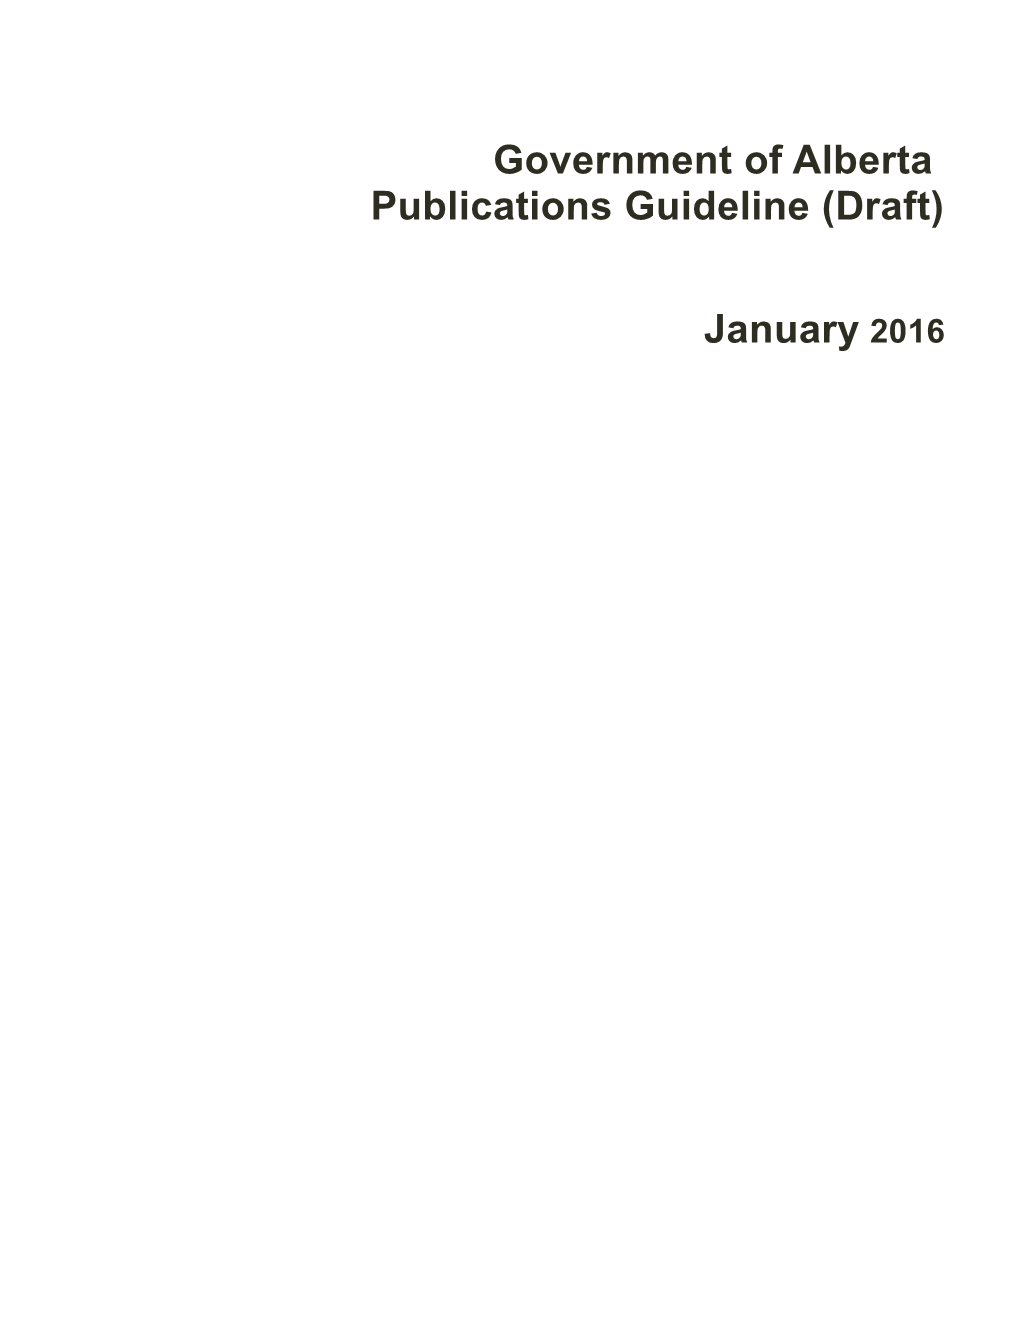 2015-12-09 Goa Publications Guideline DRAFT V.4